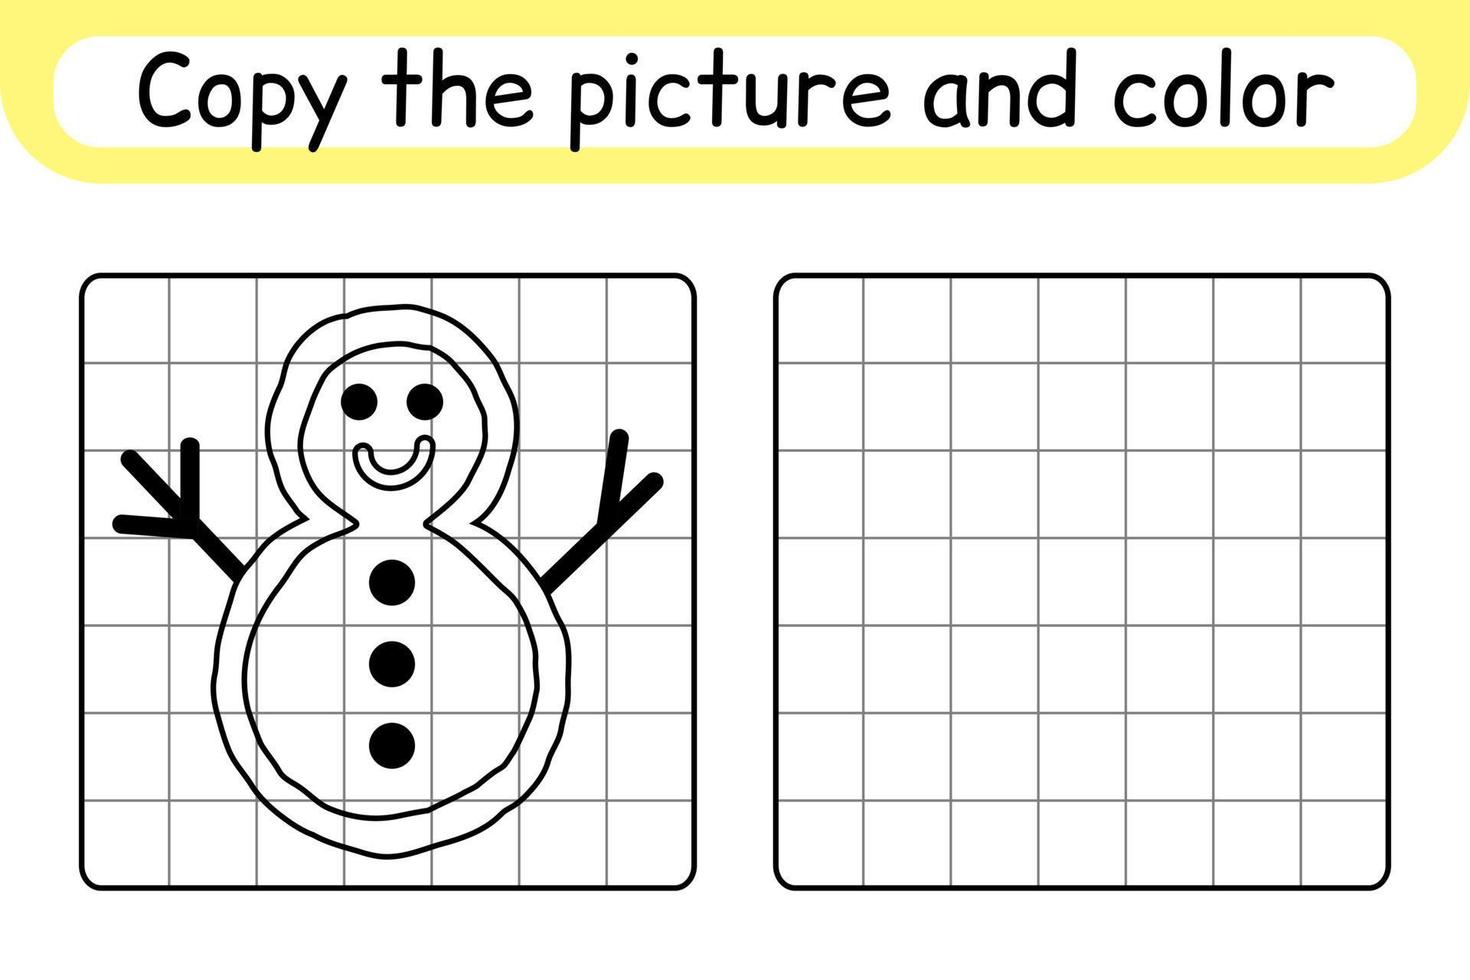 copia la imagen y colorea el muñeco de nieve. completa la imagen terminar la imagen. libro de colorear. juego educativo de ejercicios de dibujo para niños vector